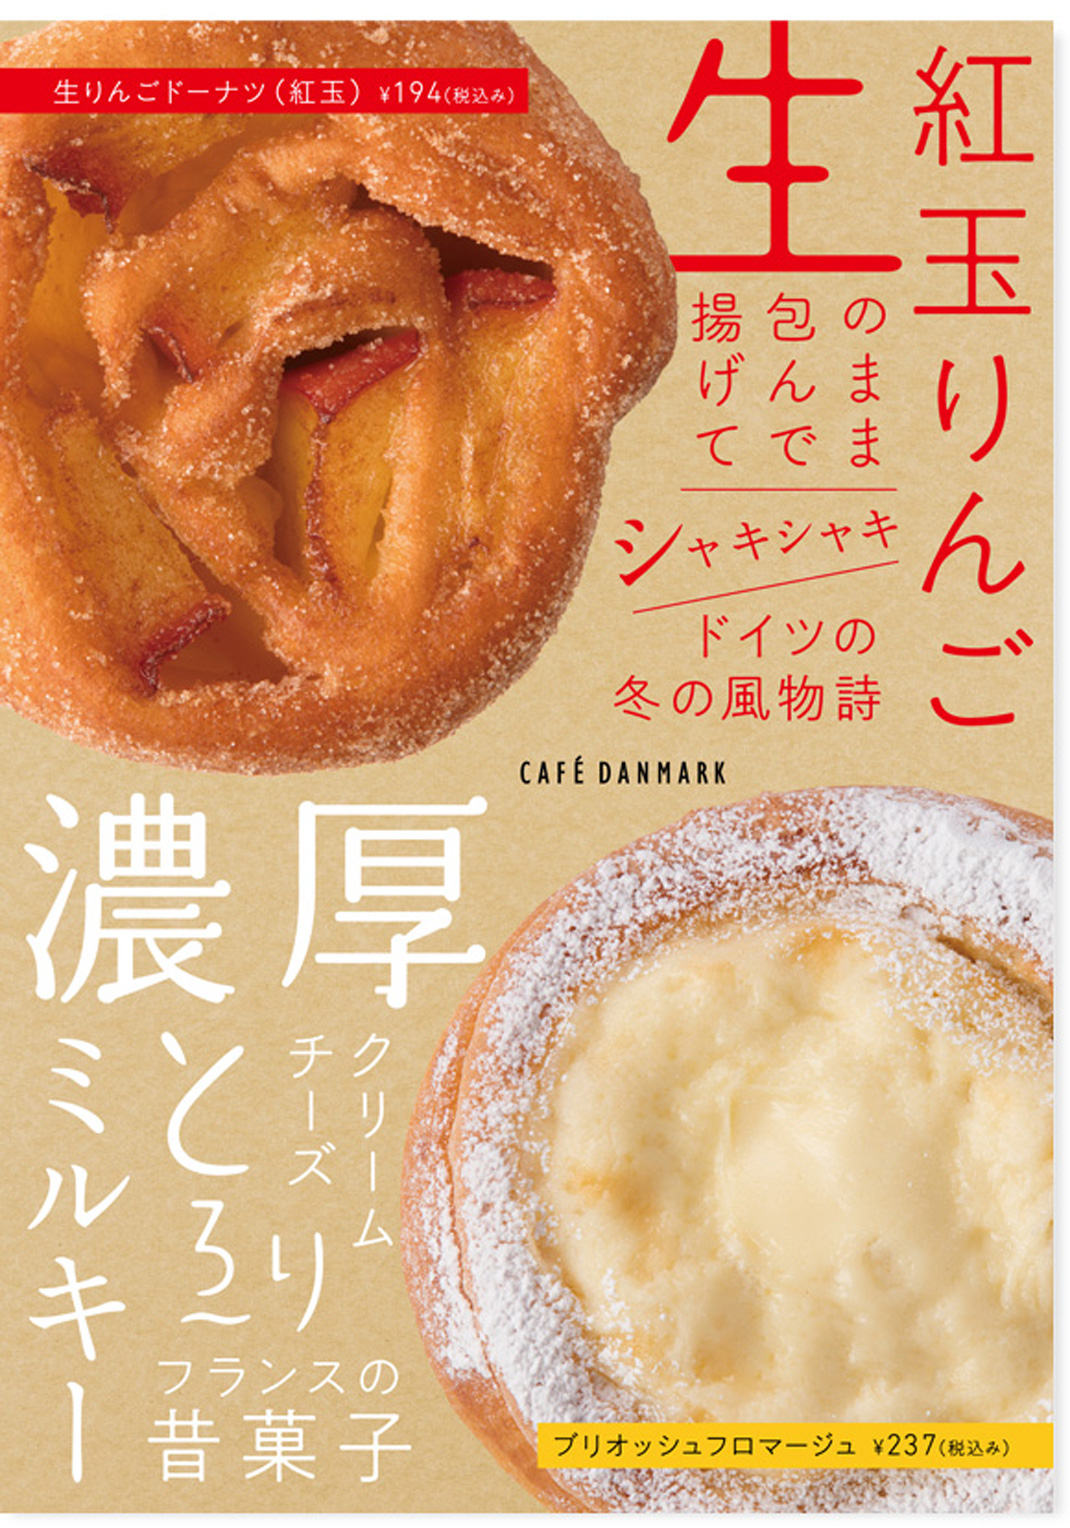 餐饮海报设计 日本 日本 广告设计 海报设计 插图 推广设计 logo设计 vi设计 空间设计